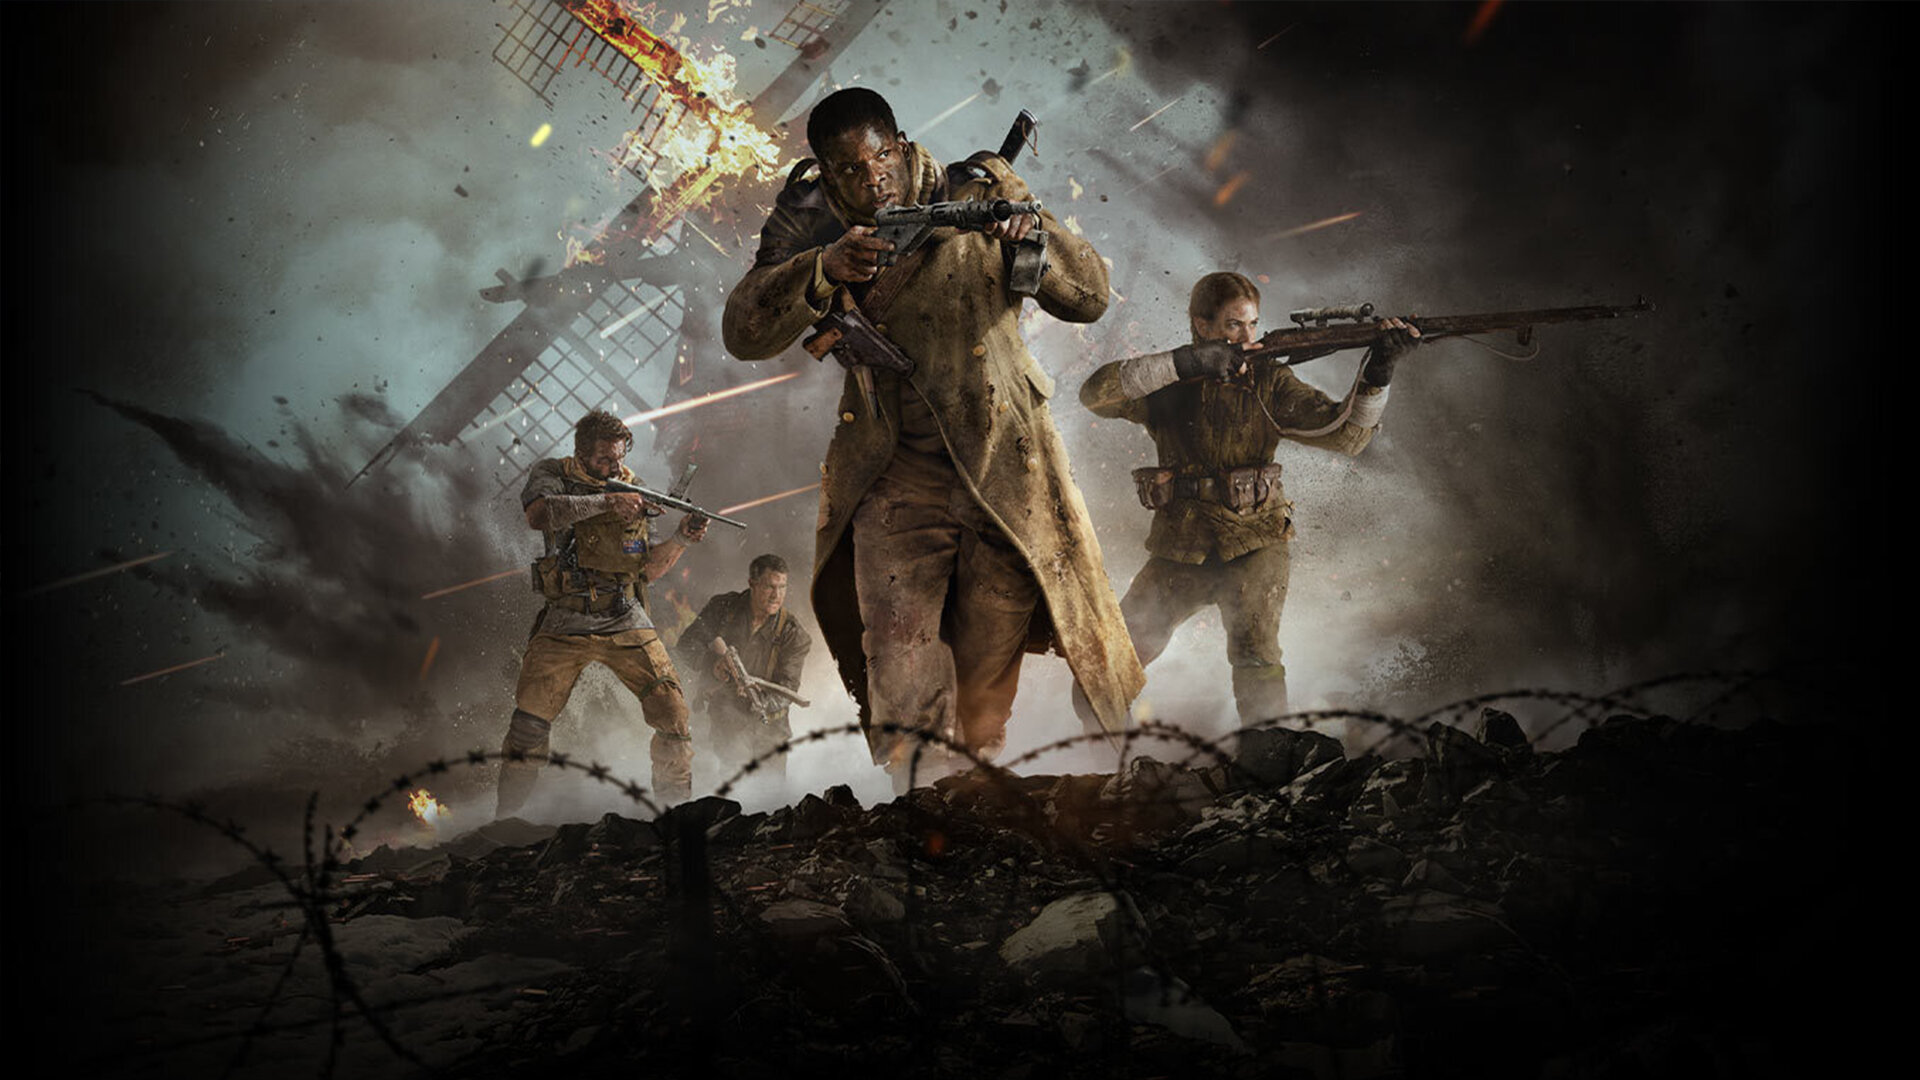 Раздаем 50 кодов на бету Call of Duty: Vanguard — начало раздачи в 18:00 (МСК)